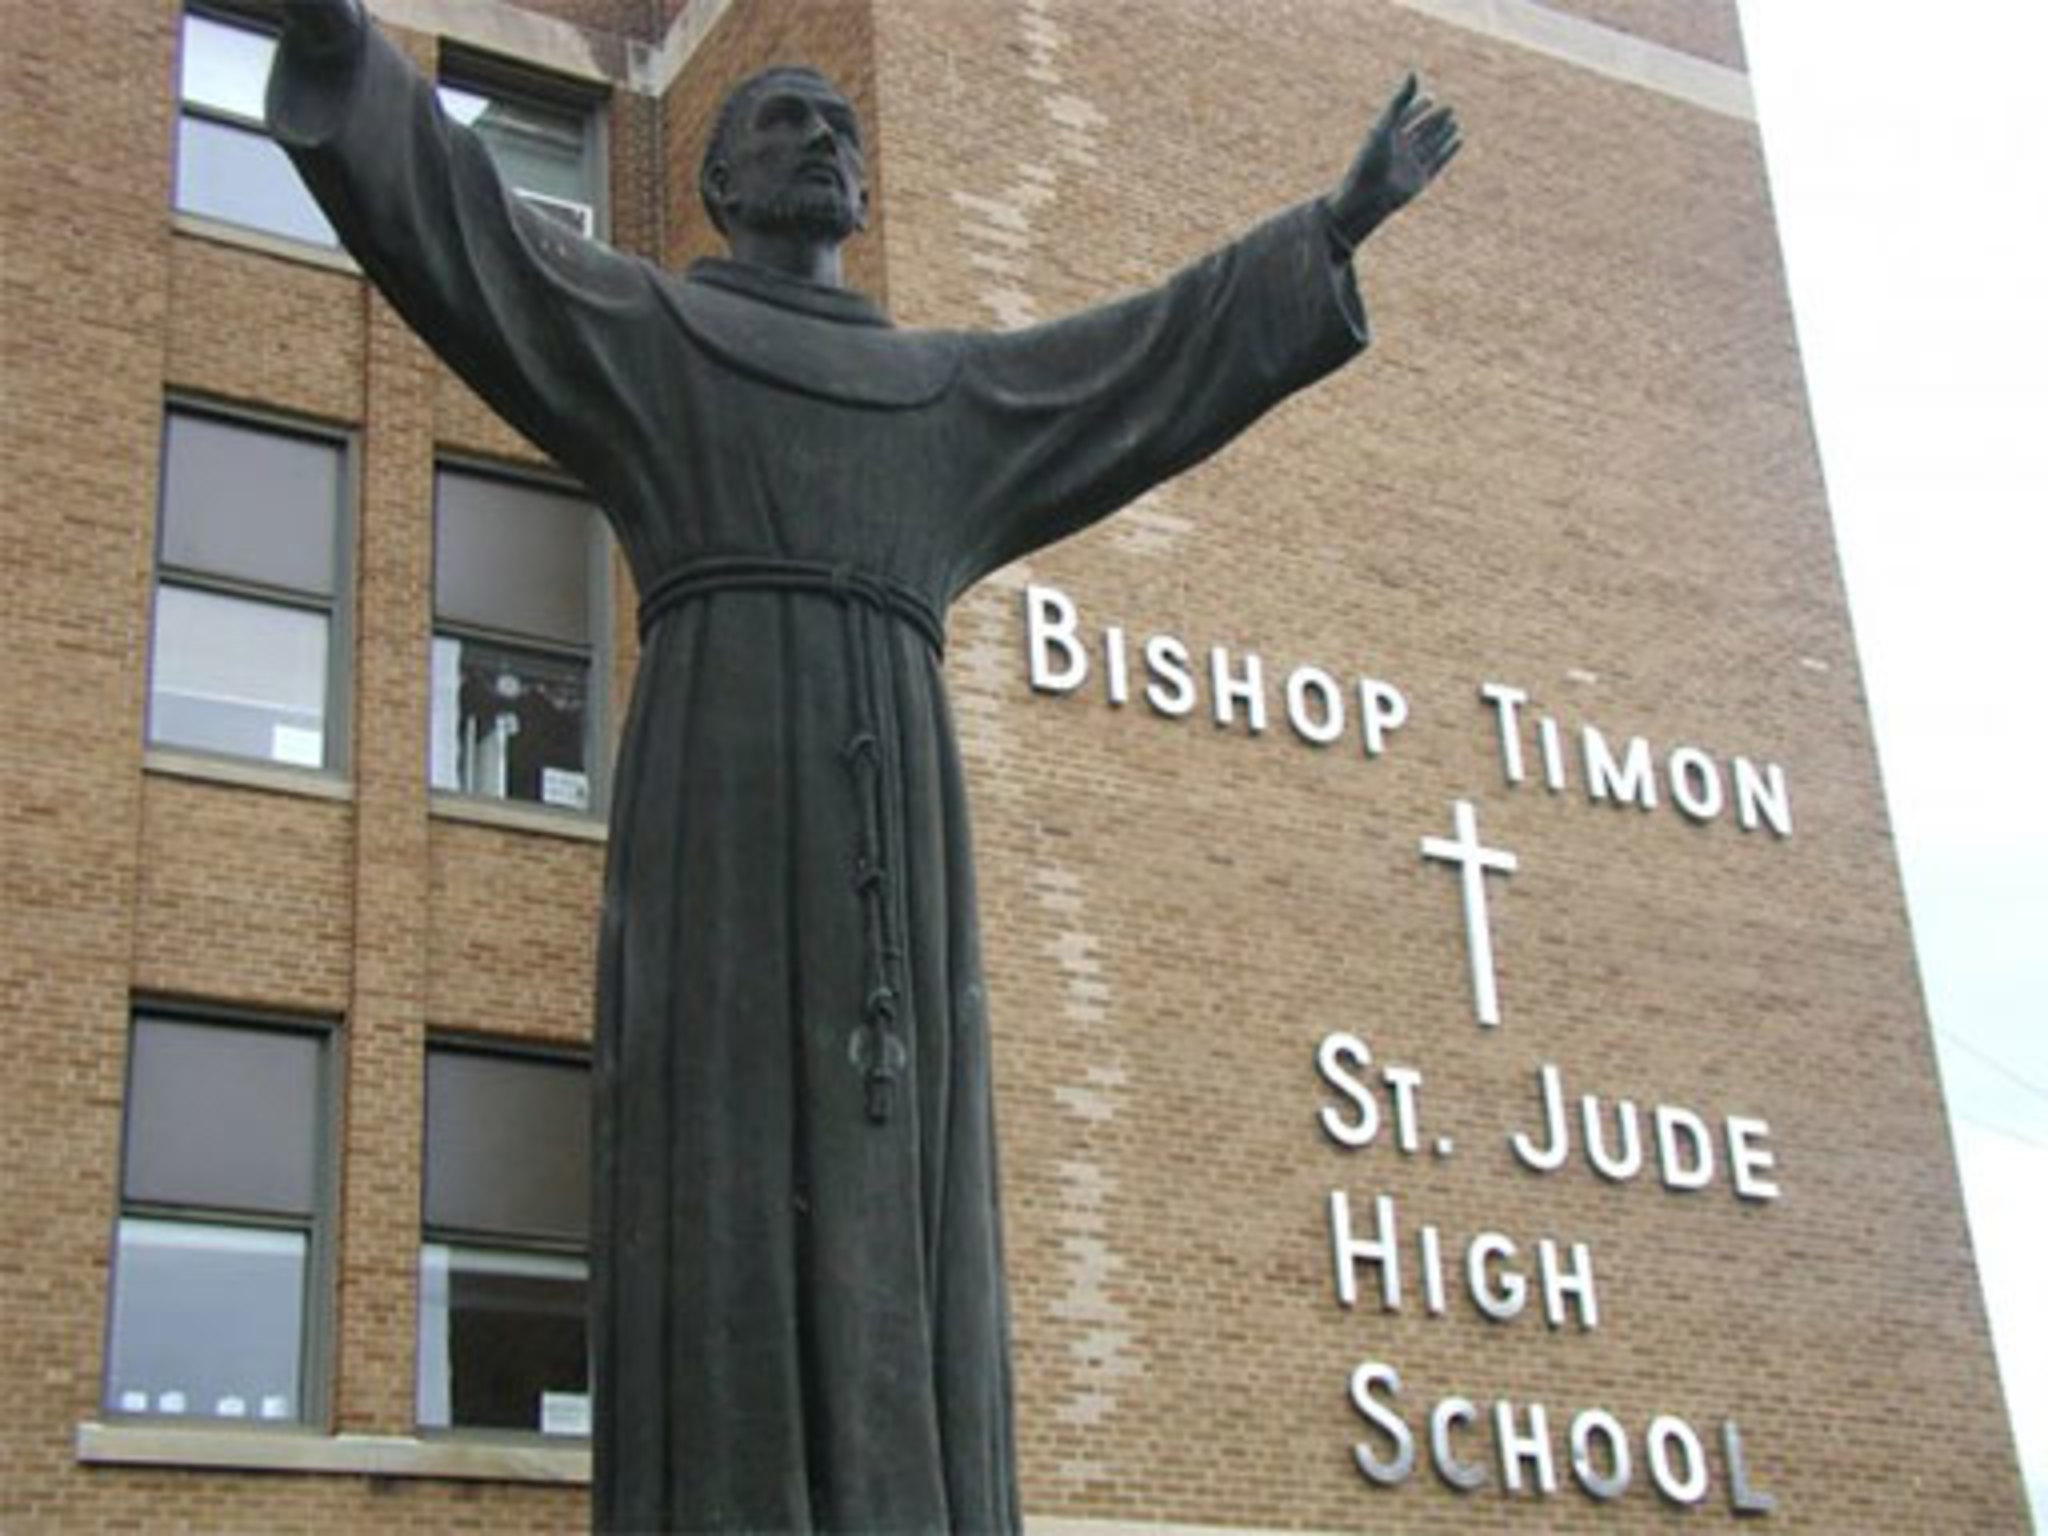 Bishop Timon